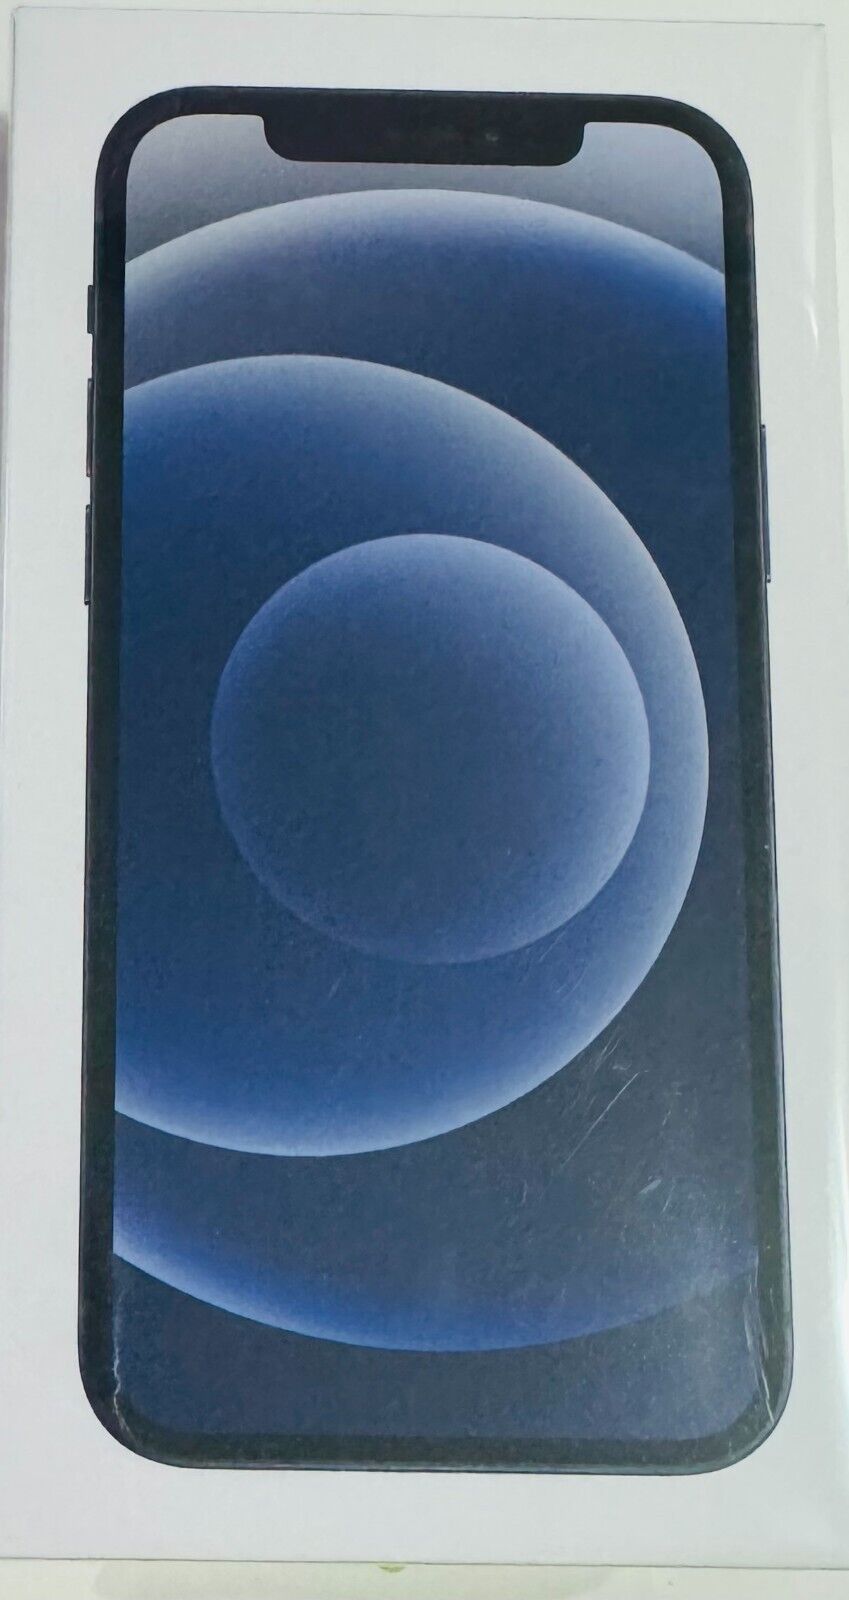 Apple iPhone 12 - 64GB - Black (Unlocked) Sealed In ORIGINAL PACKAGING!